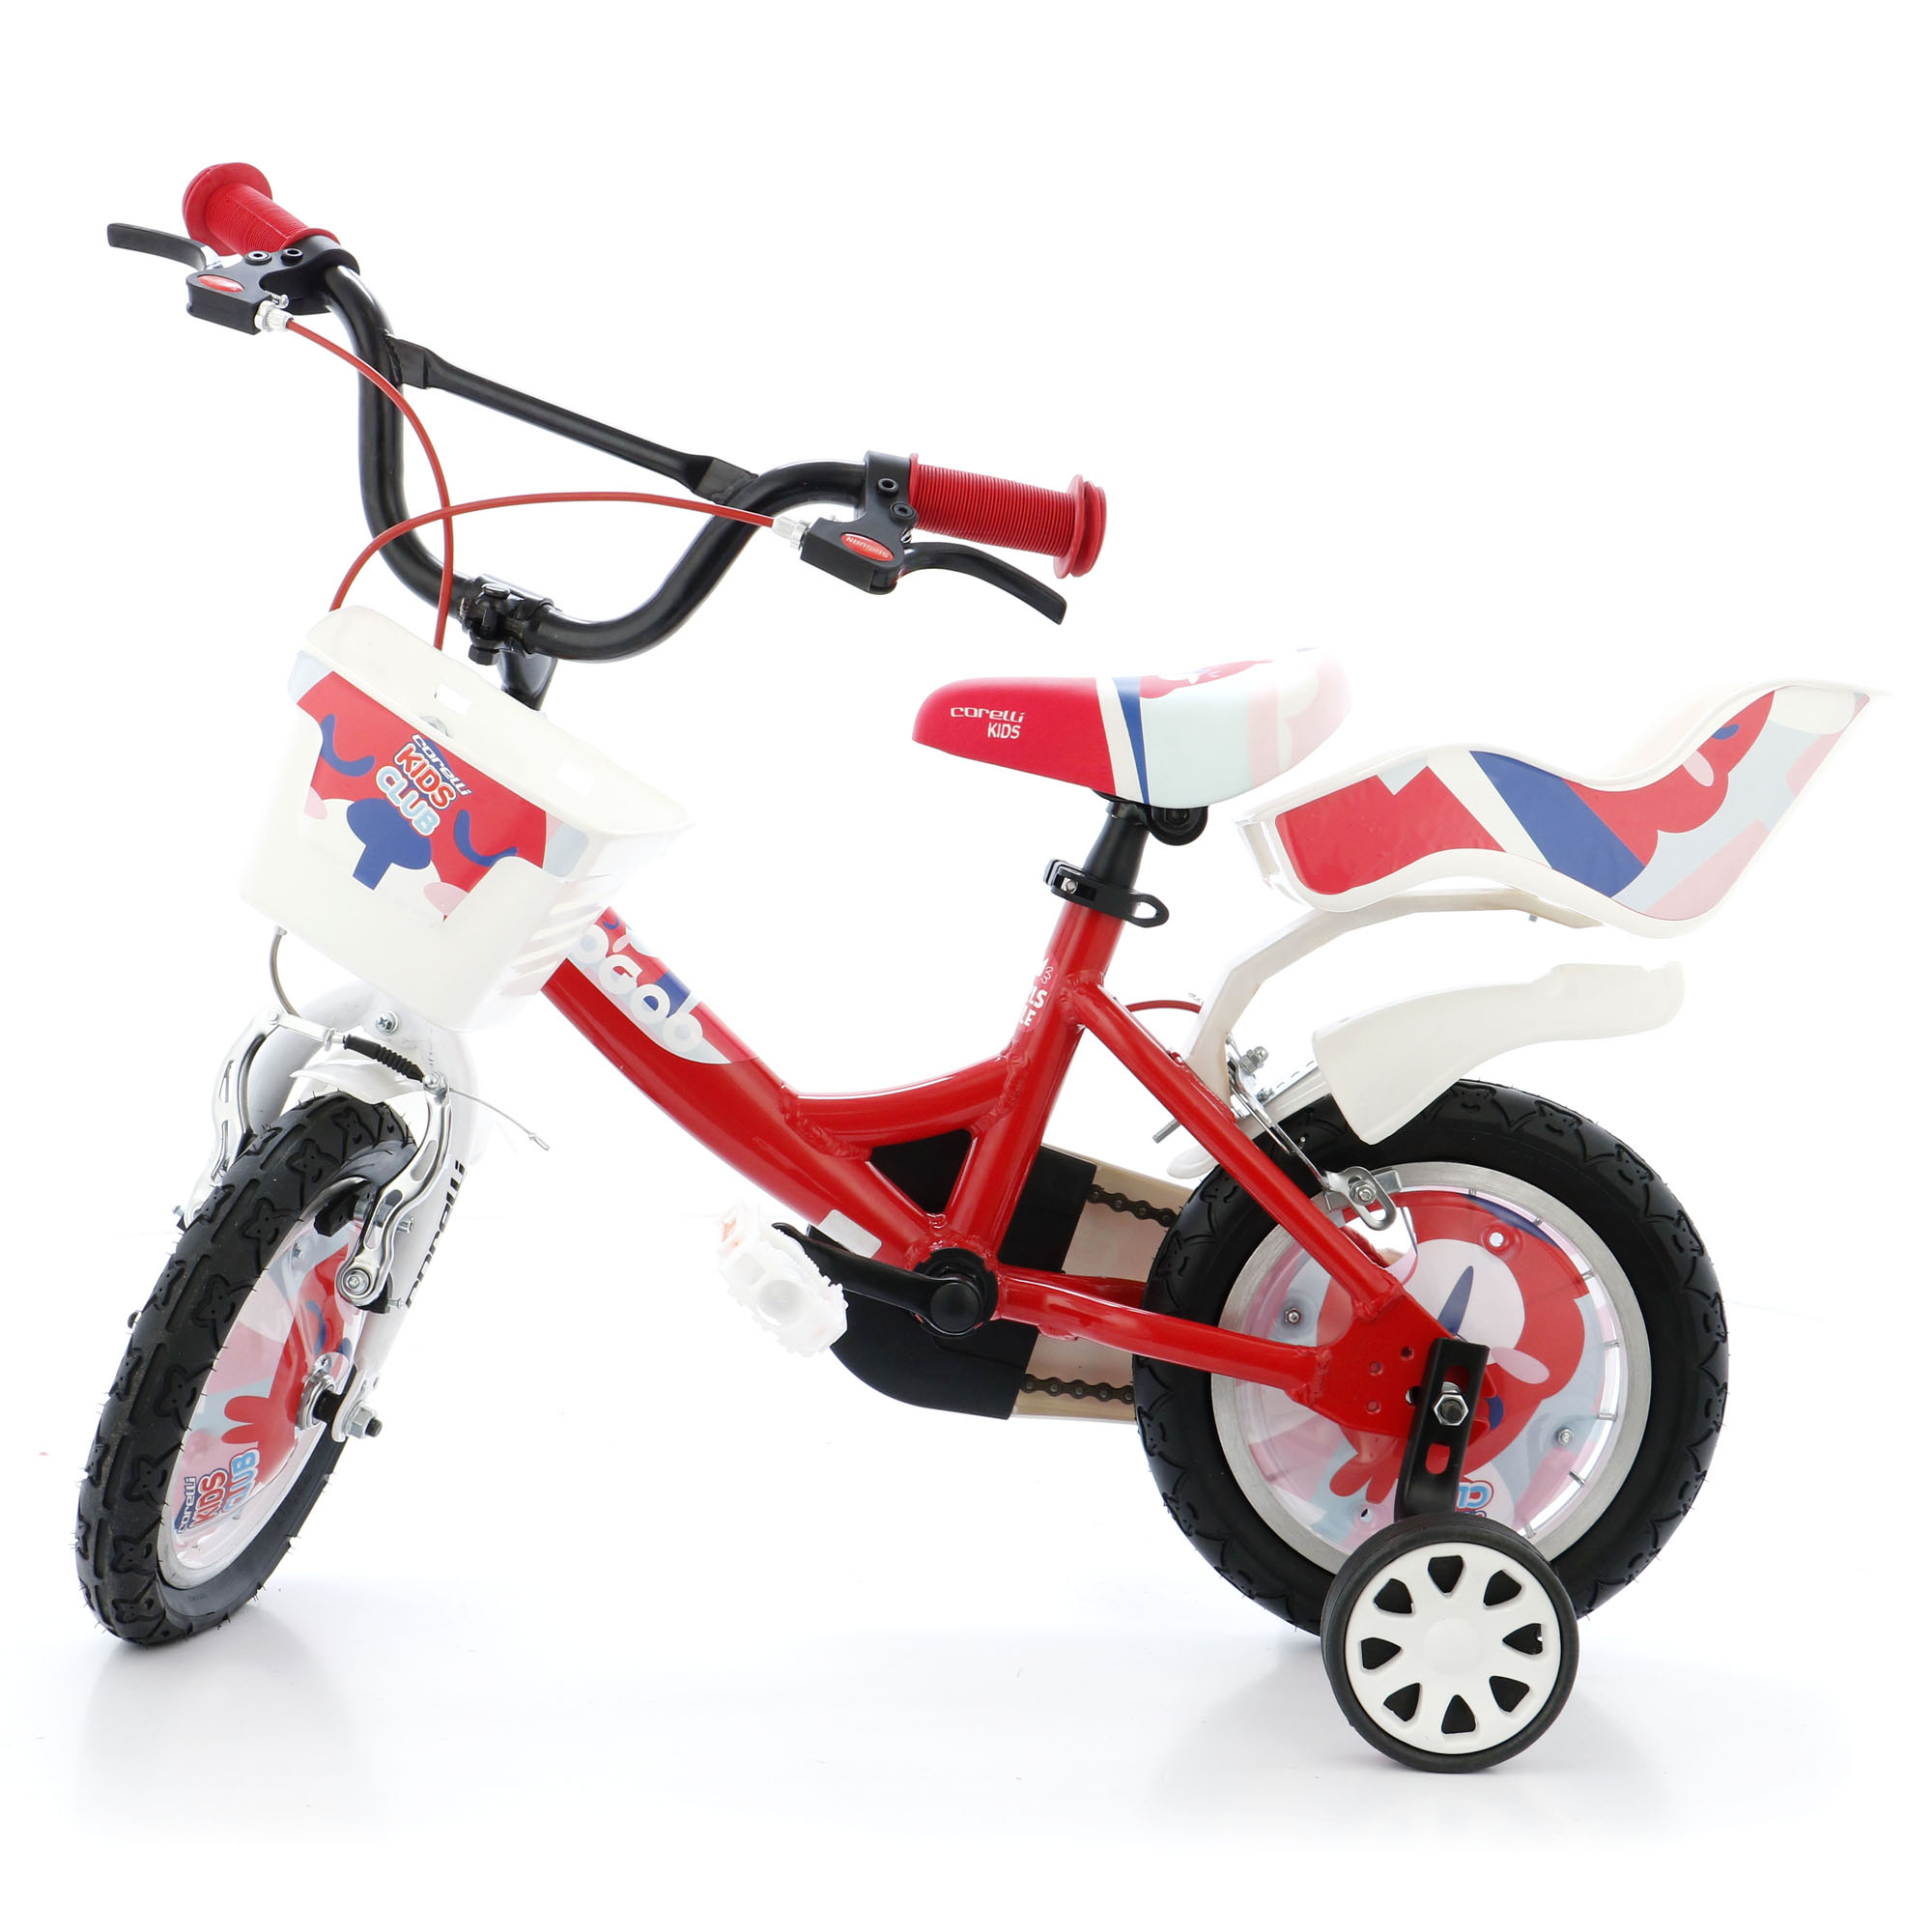 Fotografie Bicicleta pentru copii Corelli GOOGOO, 12", cu accesorii incluse, culoare rosu-alb